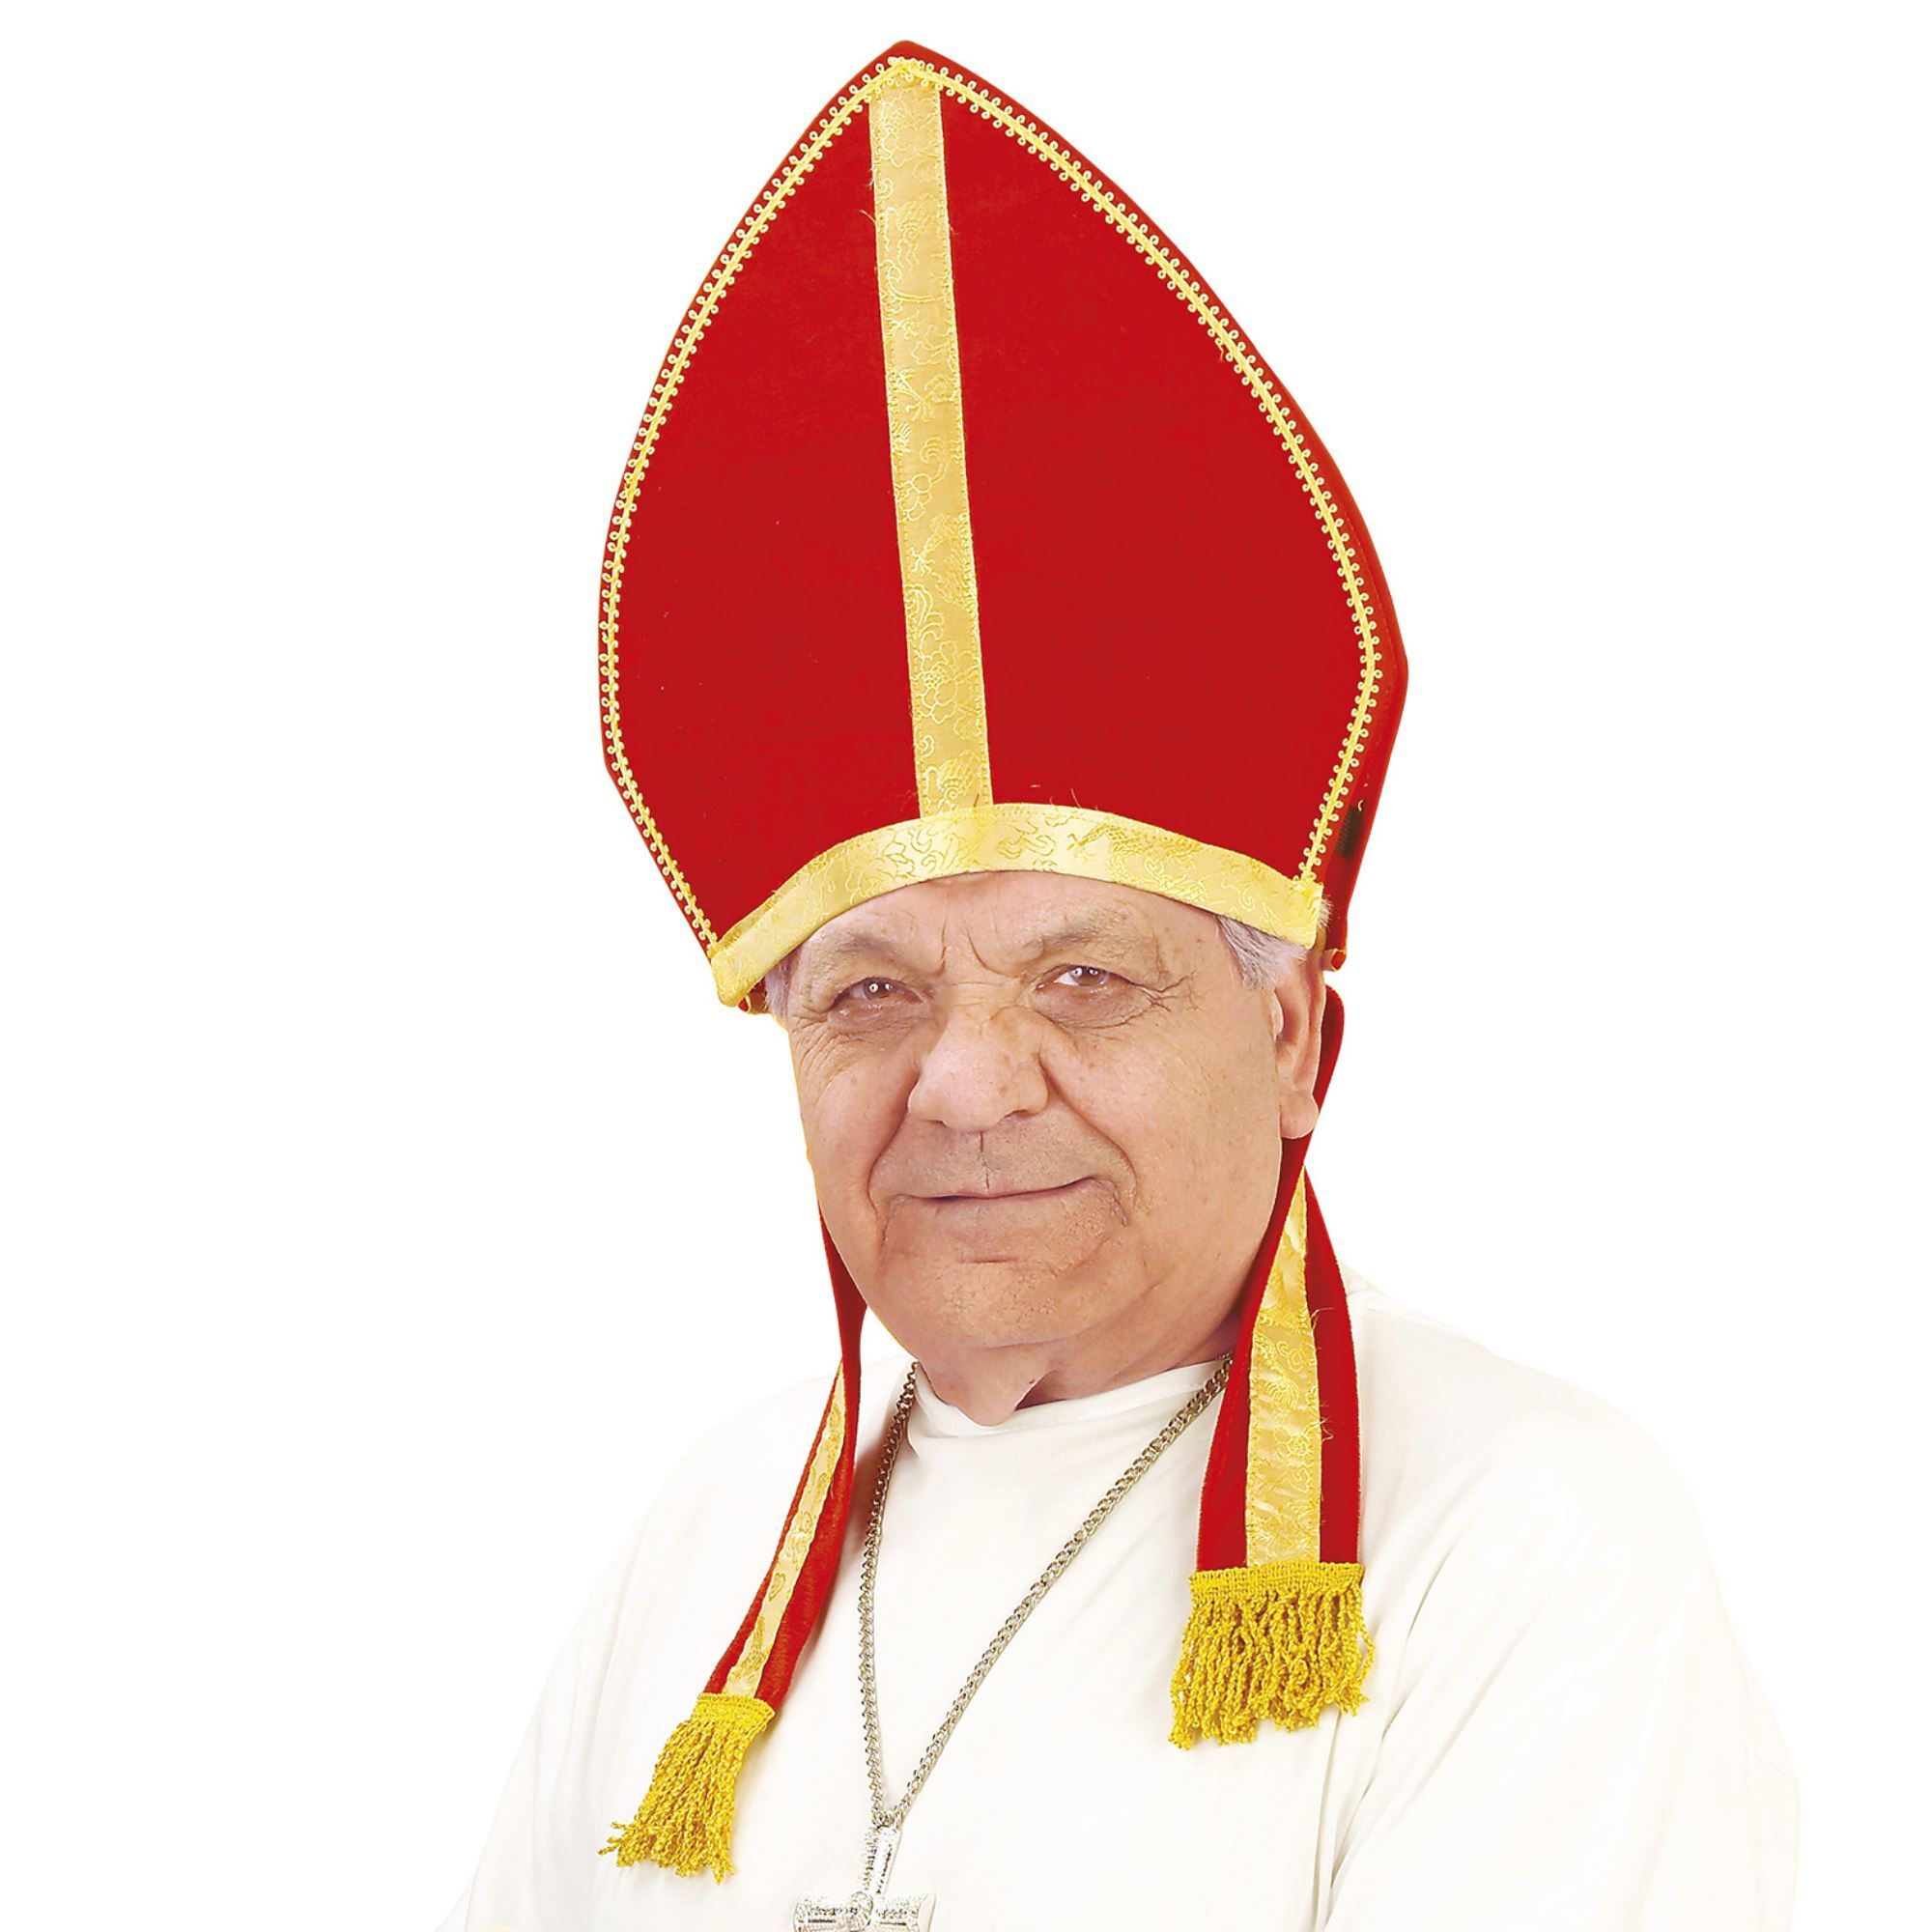 Muts kardinaal - Fluwelen bisschopshoed in rood goud